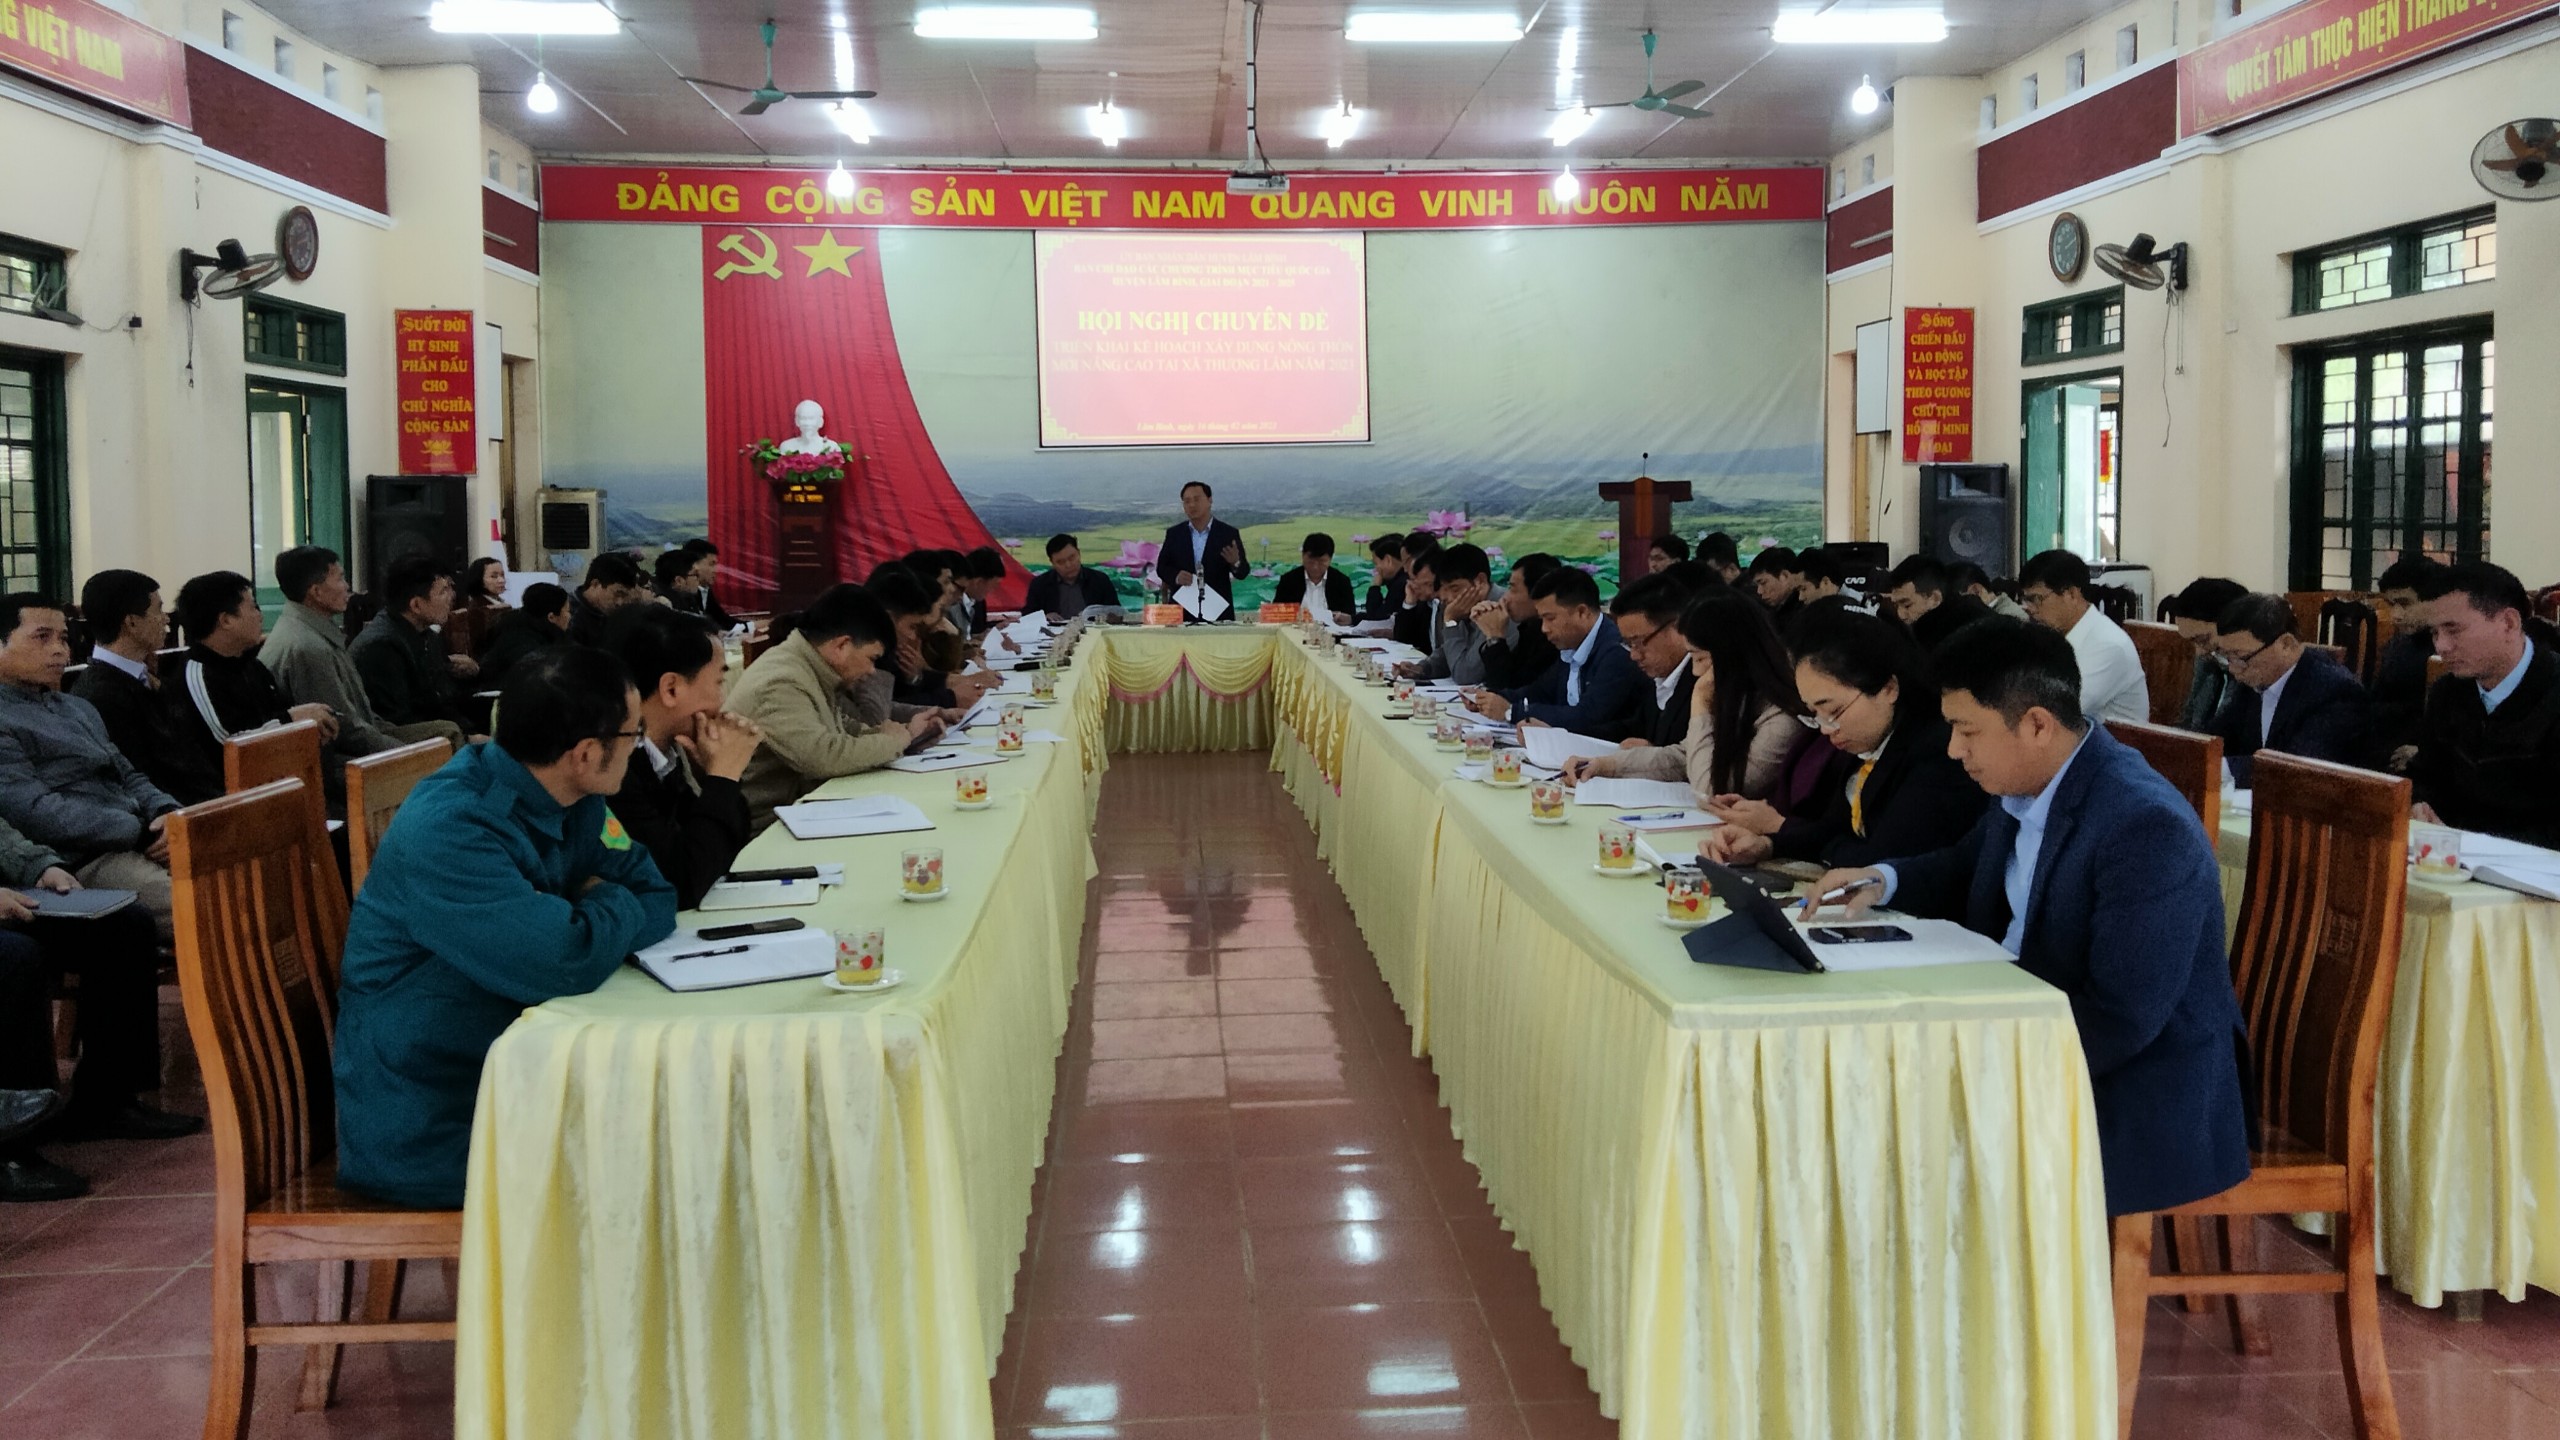 Lâm Bình: Xã Thượng Lâm phấn đấu hoàn thành xây dựng nông thôn mới nâng cao năm 2023